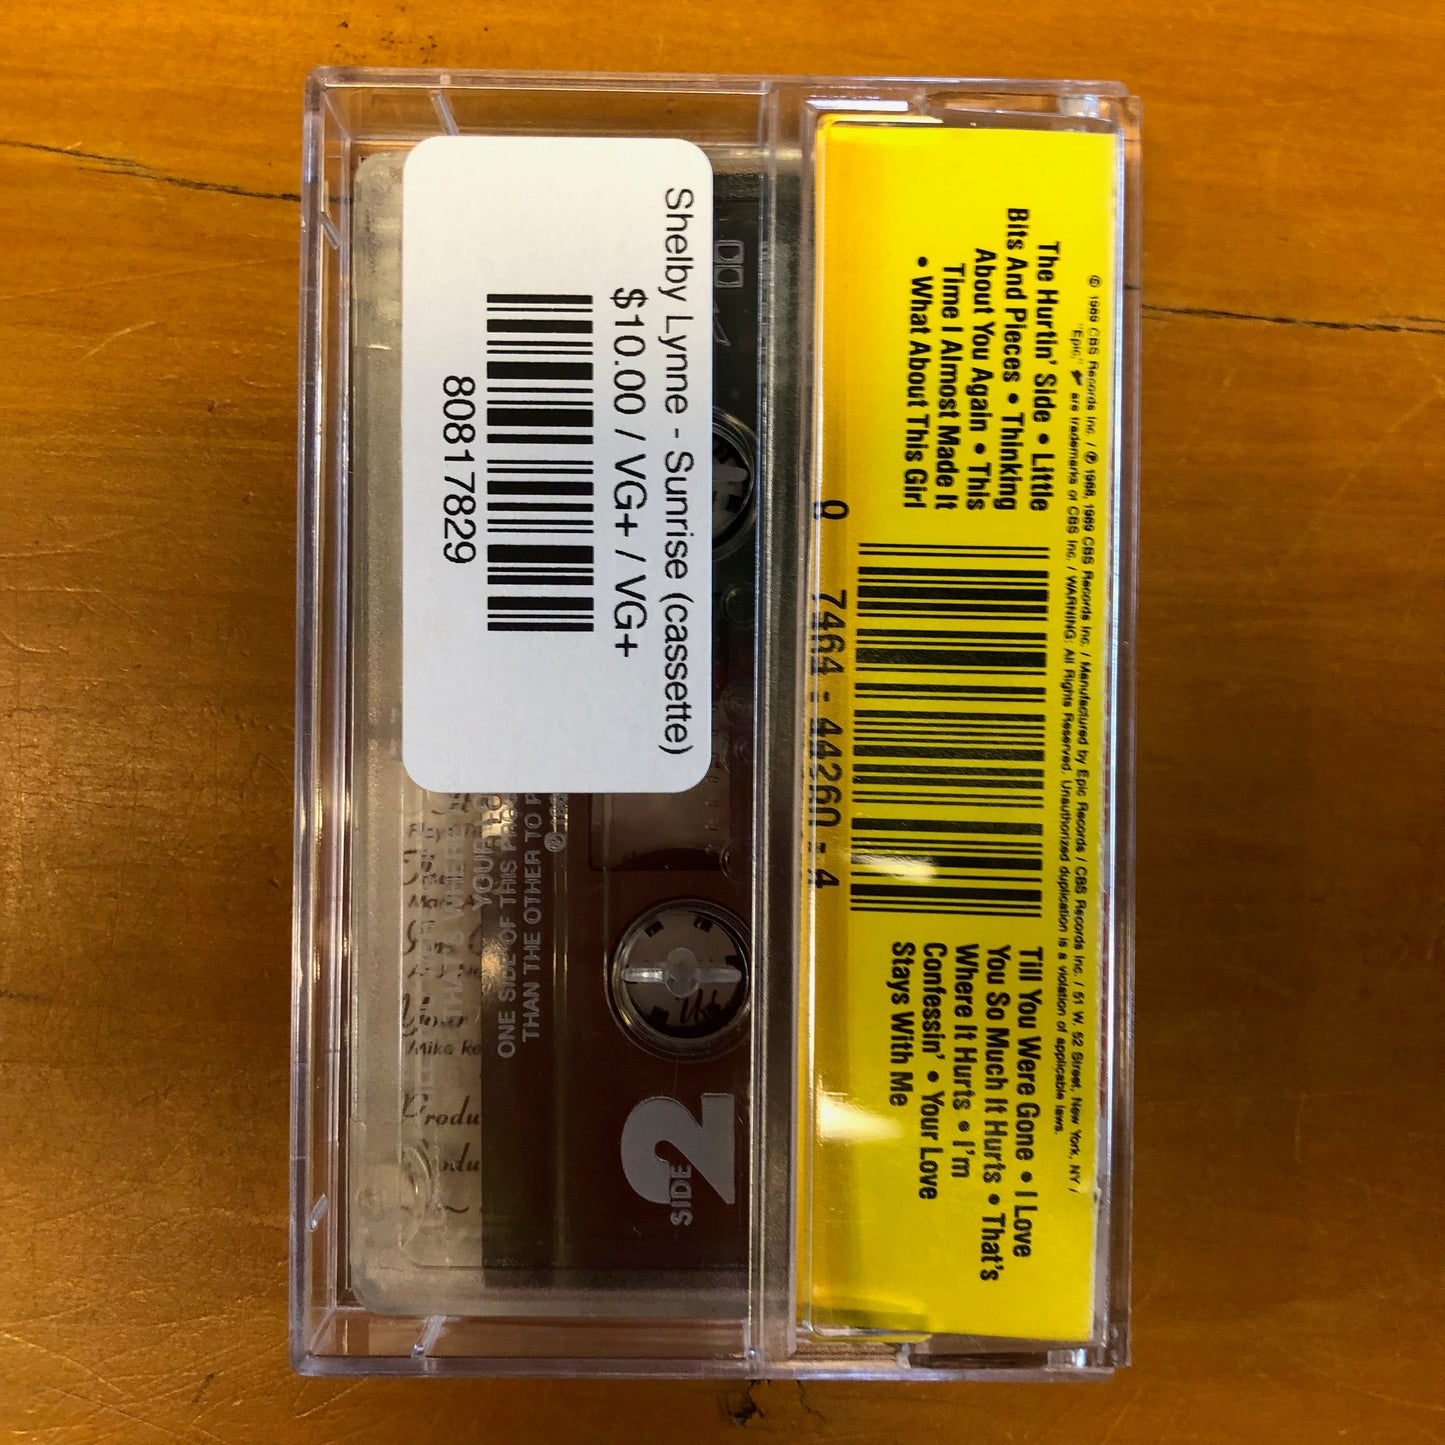 Shelby Lynne - Sunrise (cassette)